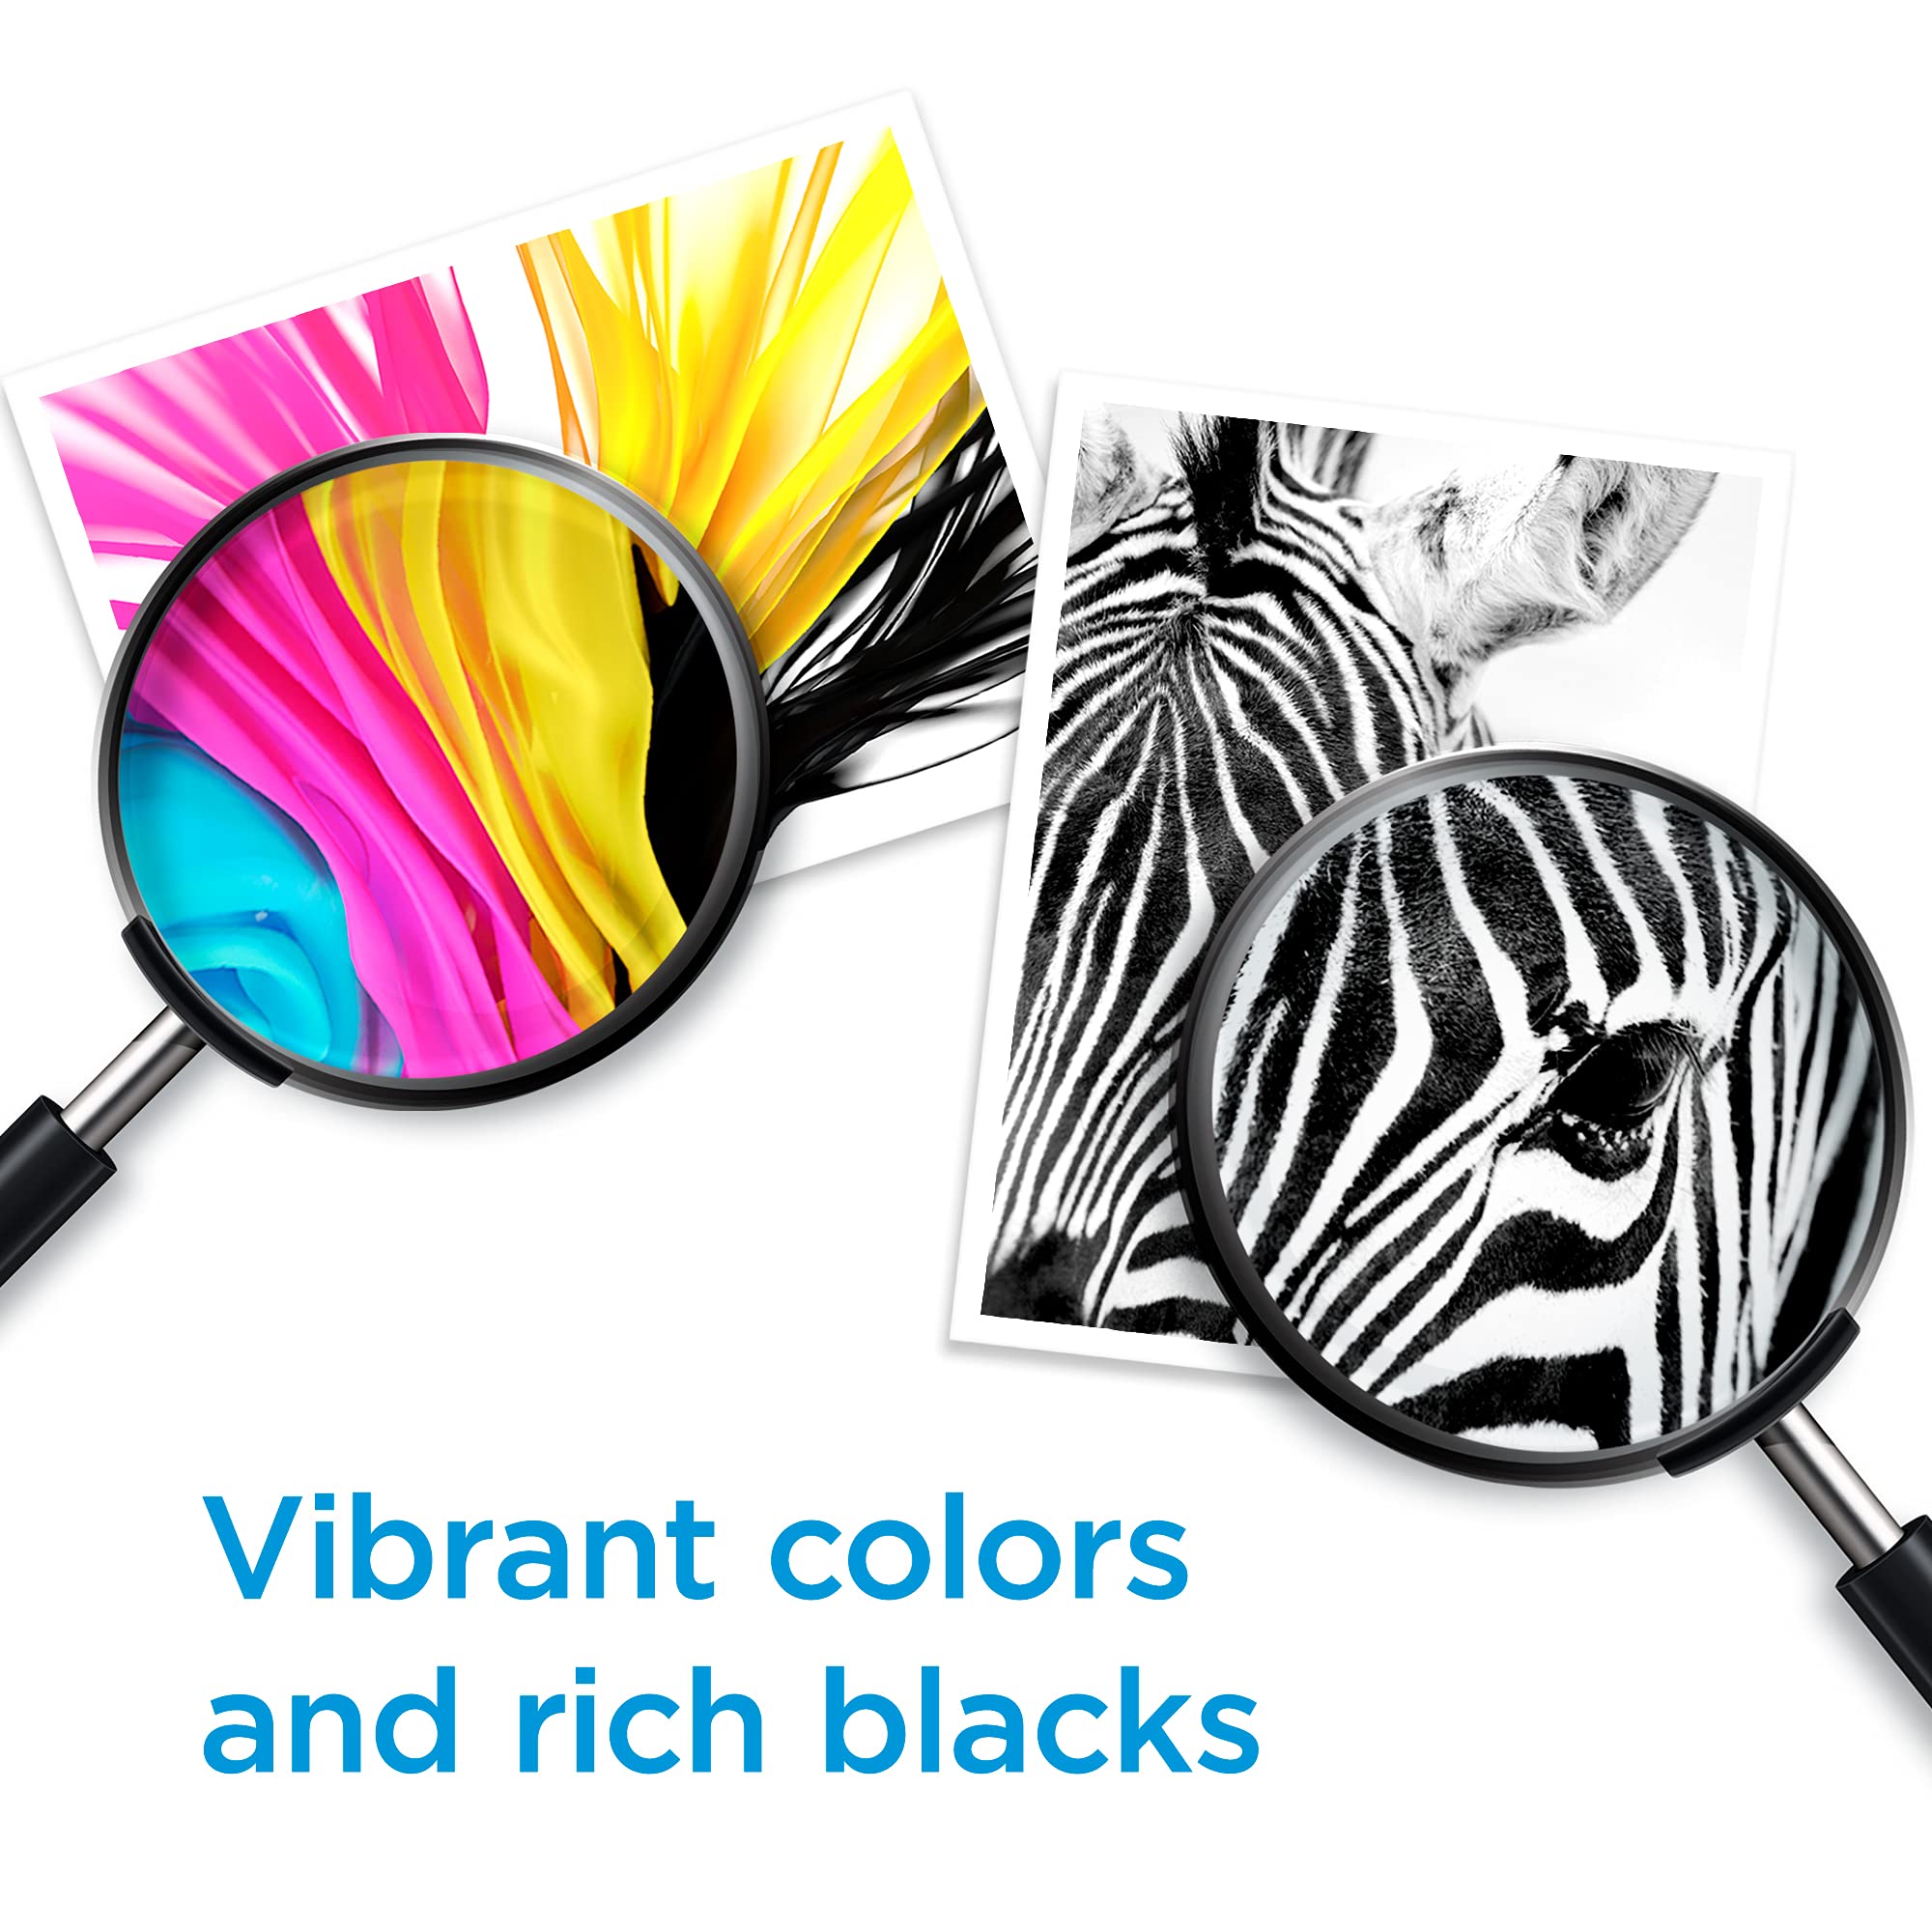 HP 61 Black/Tri-color Ink (2 Count - pack) | Works with DeskJet 1000, 1010, 1050, 1510, 2050, 2510, 2540, 3000, 3050, 3510; ENVY 4500, 5530; OfficeJet 2620, 4630 | Eligible for Instant Ink | CR259FN